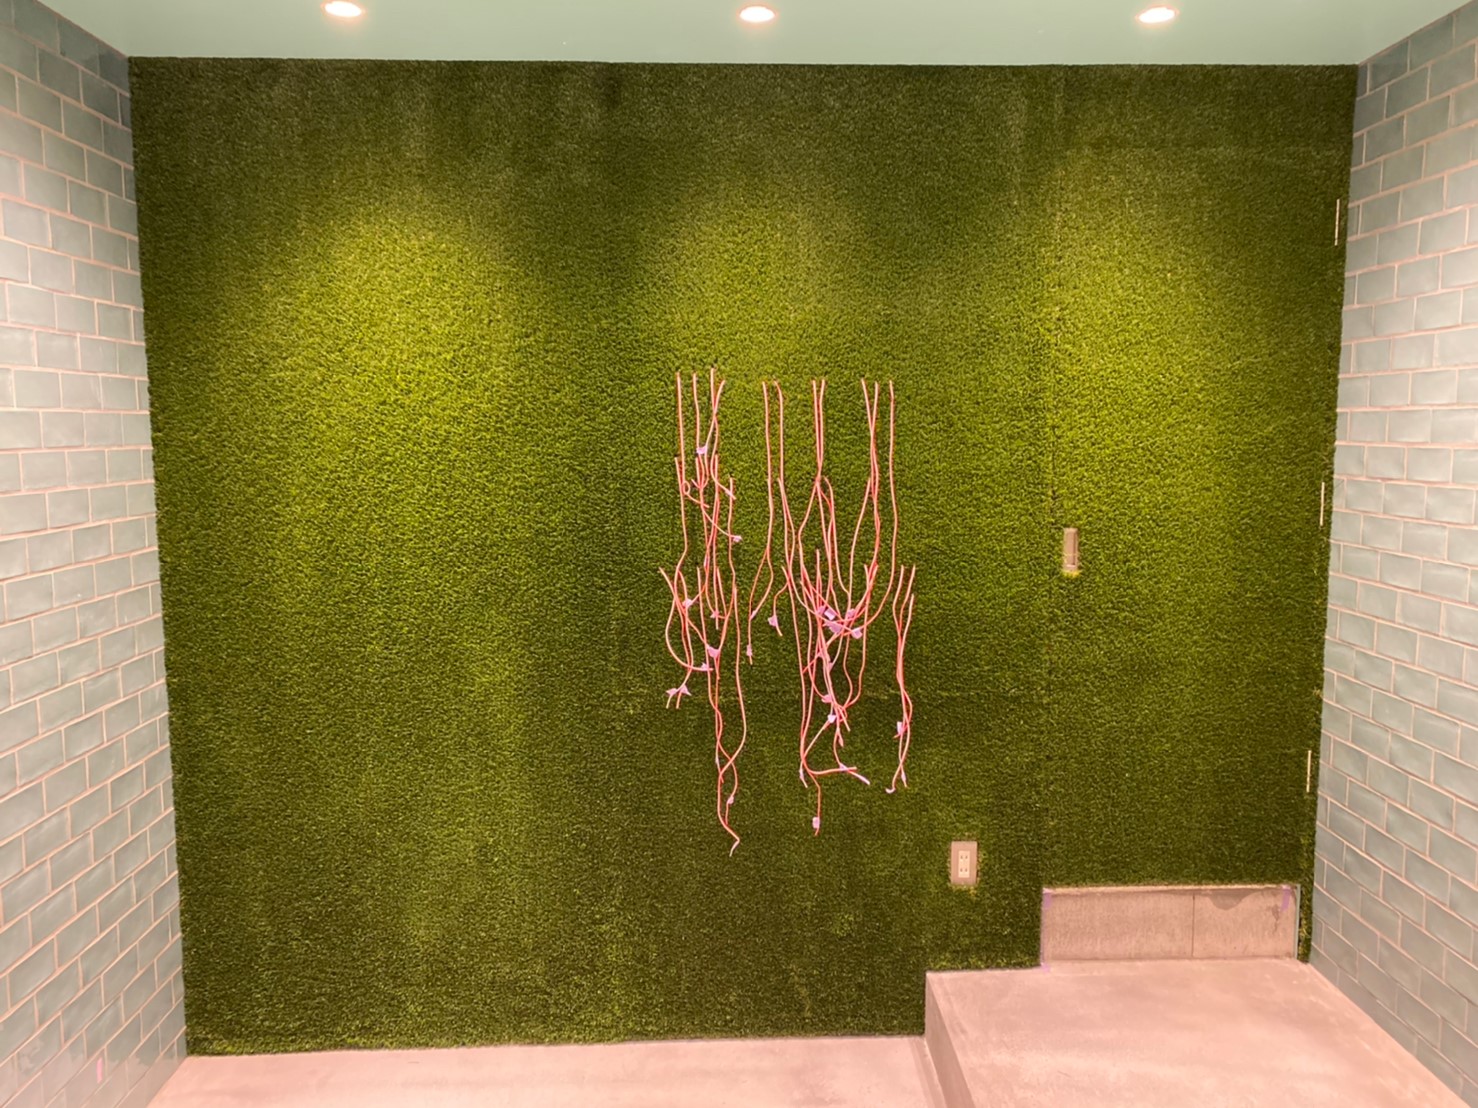 壁紙施工 新宿 オフィス アトリエサンクレーヴ 東京都 空間デザイン インテリア 輸入壁紙施工